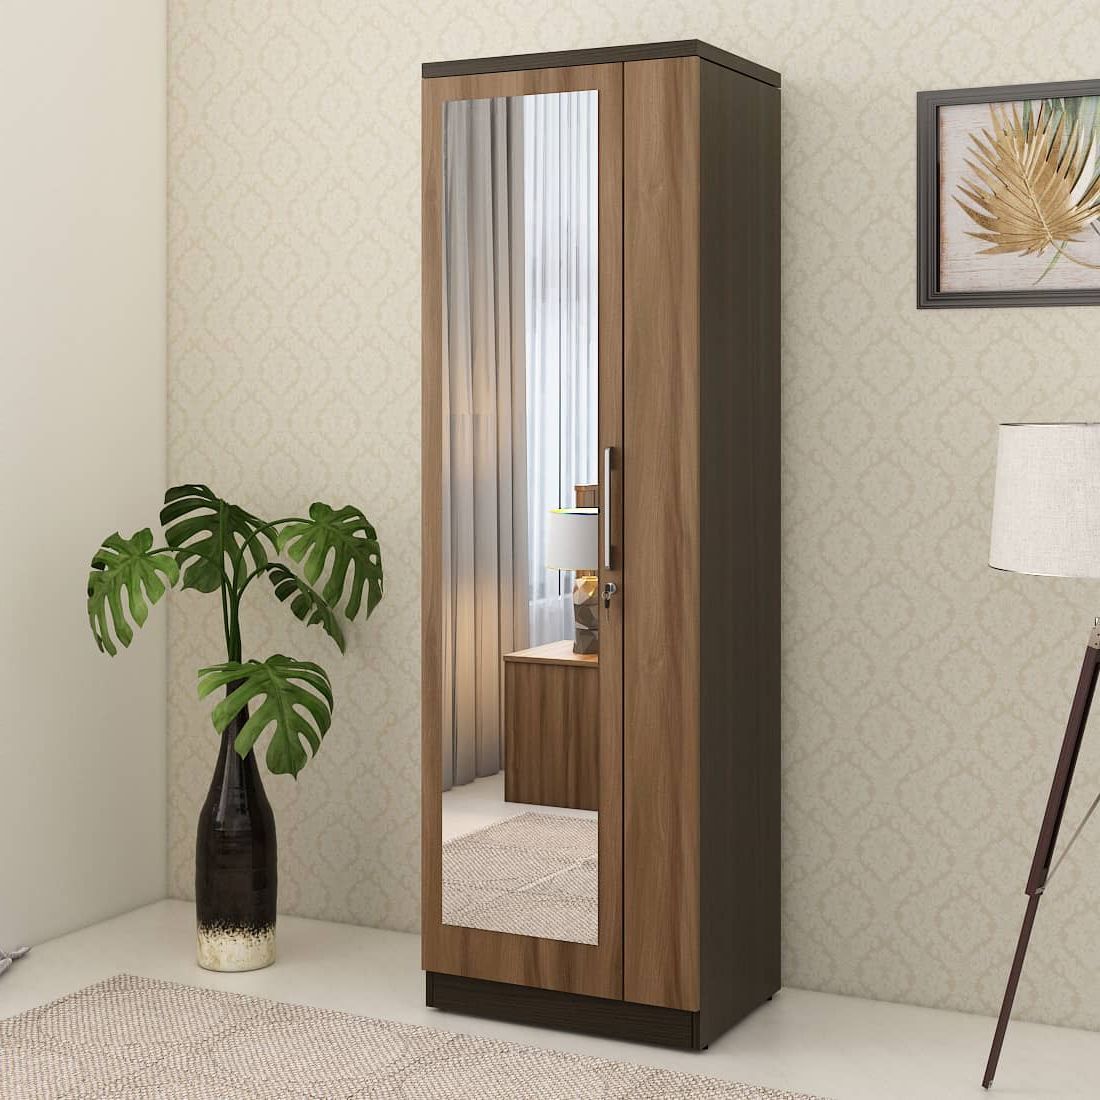 Kosmo Ken 1 Door Wardrobe With Mirror Walnut Bronze Woodpore | Spacewood  Ecommerce For 1 Door Mirrored Wardrobes (View 3 of 20)